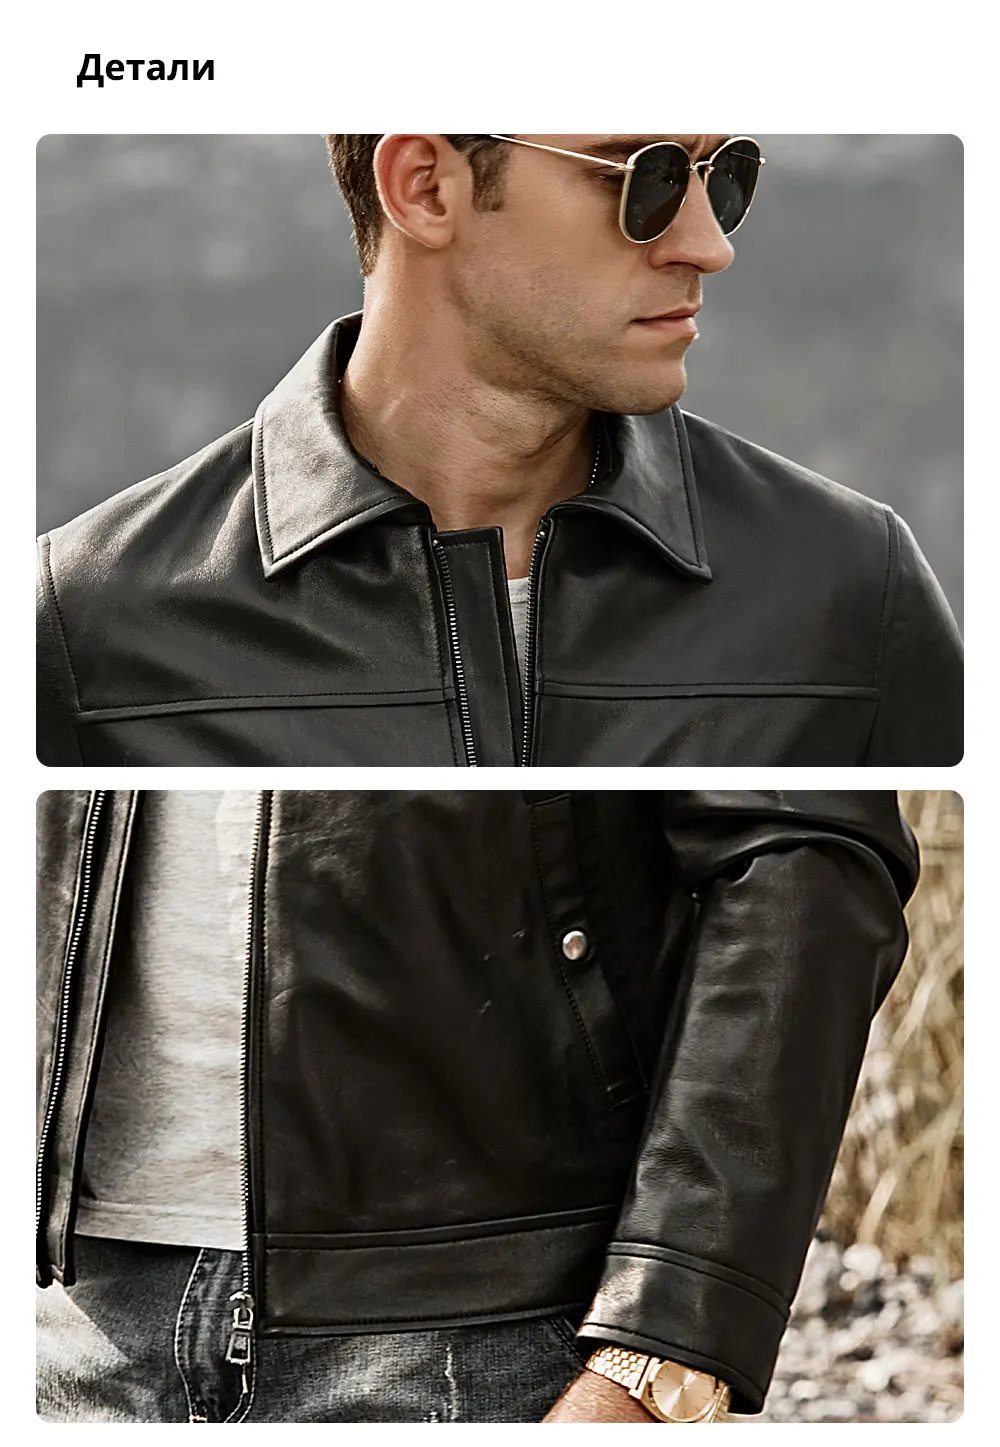 Kожаная куртка мужская с отложным воротником FLAVOR, кожаная мотоциклетная куртка из шкуры ягненка, жакет из натуральной кожи черного цвета